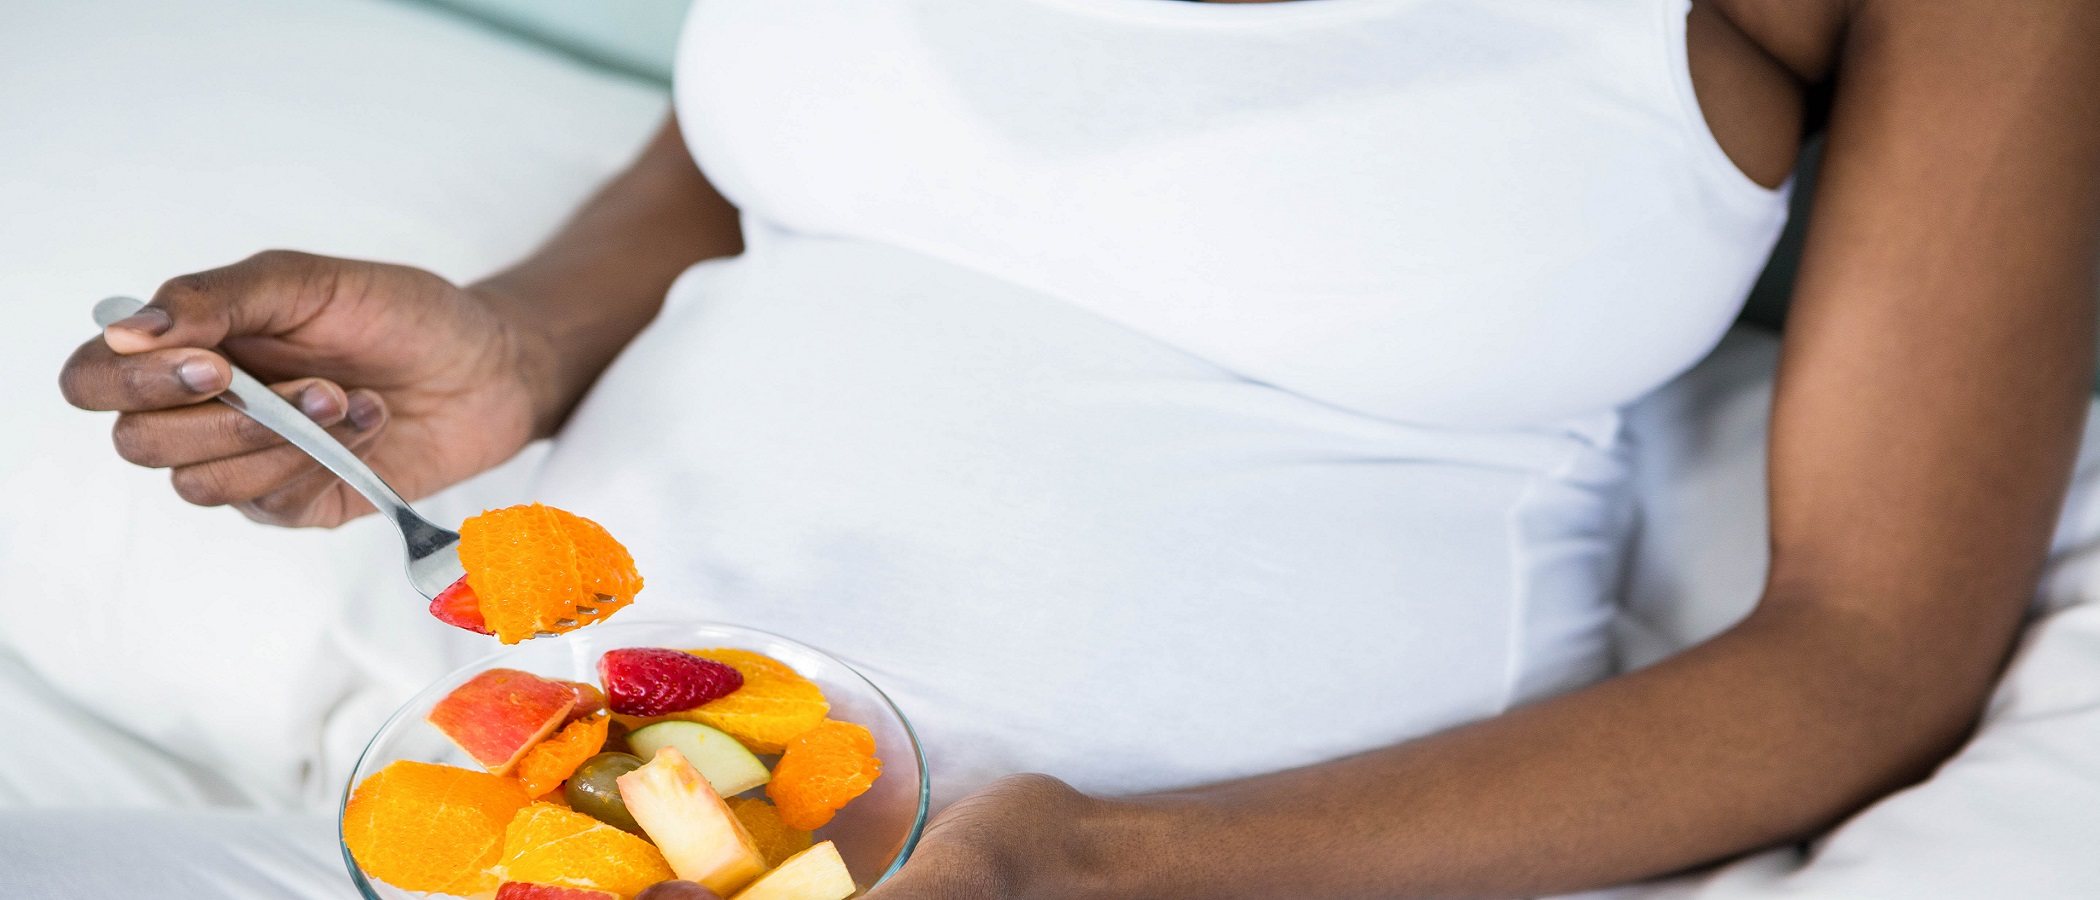 Dieta sana y equilibrada en el embarazo